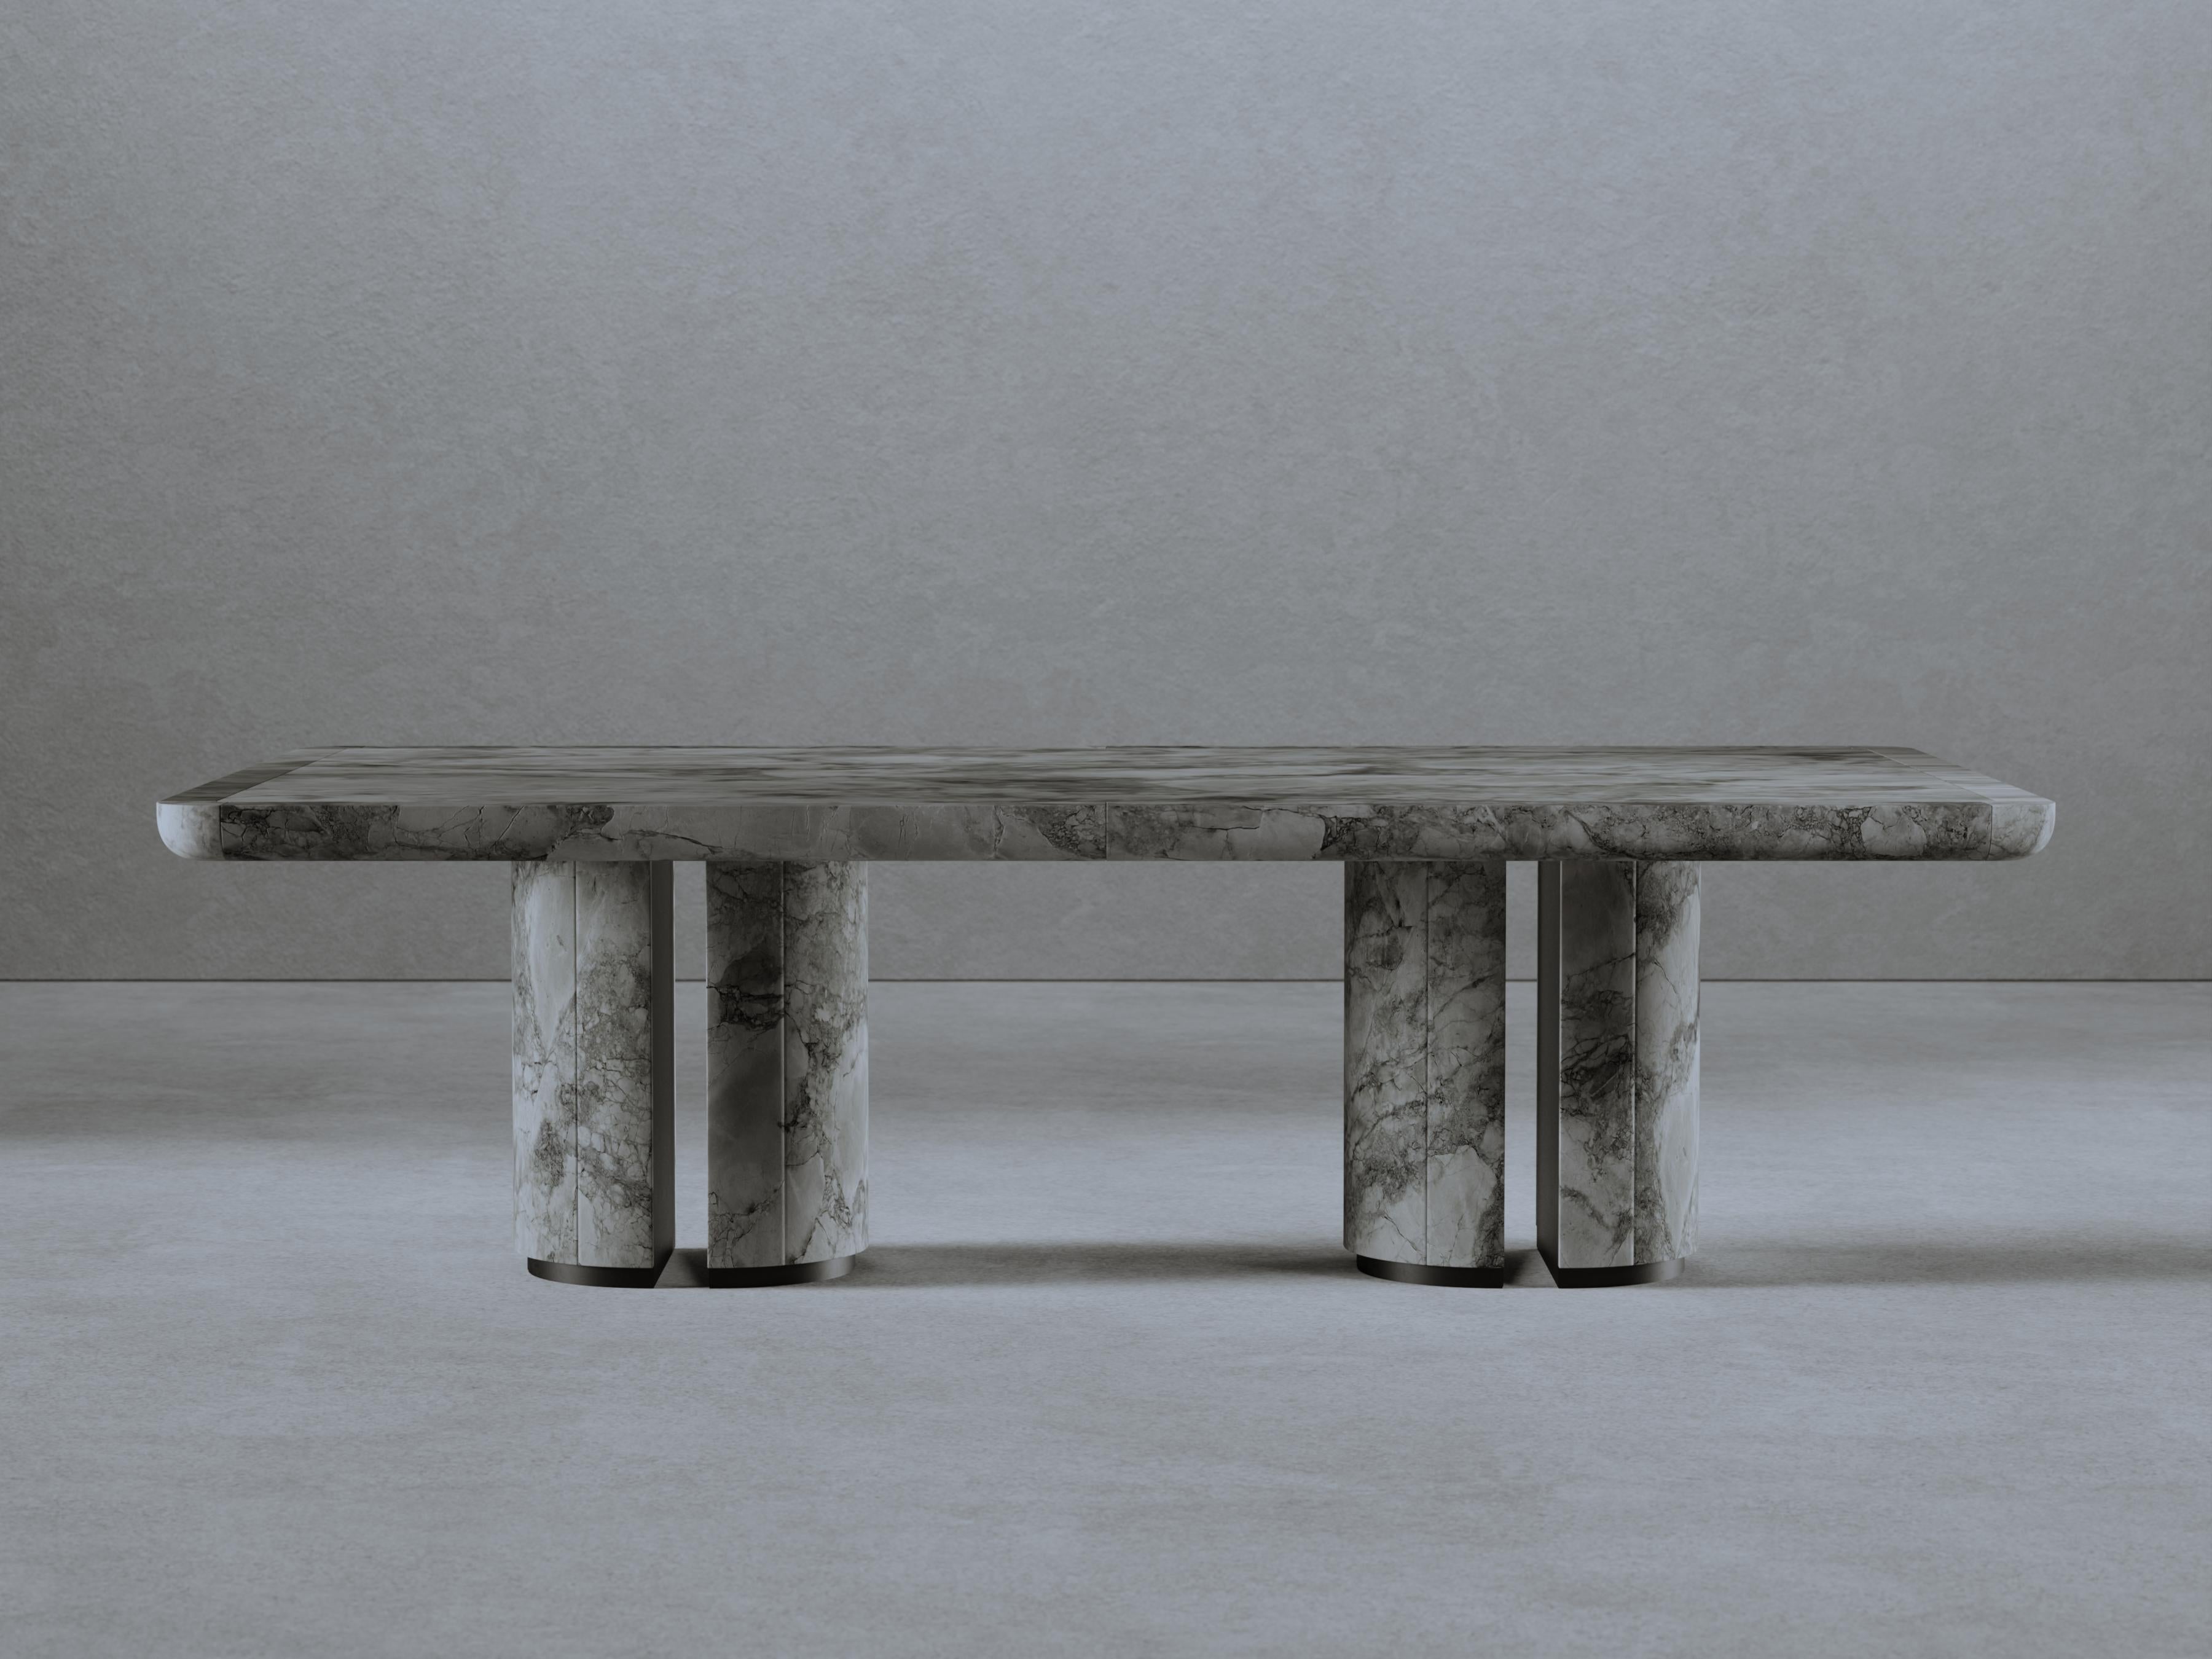 Table de salle à manger L'Alberto de Gio Pagani
Dimensions : D 260 x L 150 x H 74 cm.
MATERIAL : Marbre superblanc et métal noir mat.

Dans une société fluide capable de mélanger d'infinies variétés sociales et culturelles, la recherche nostalgique